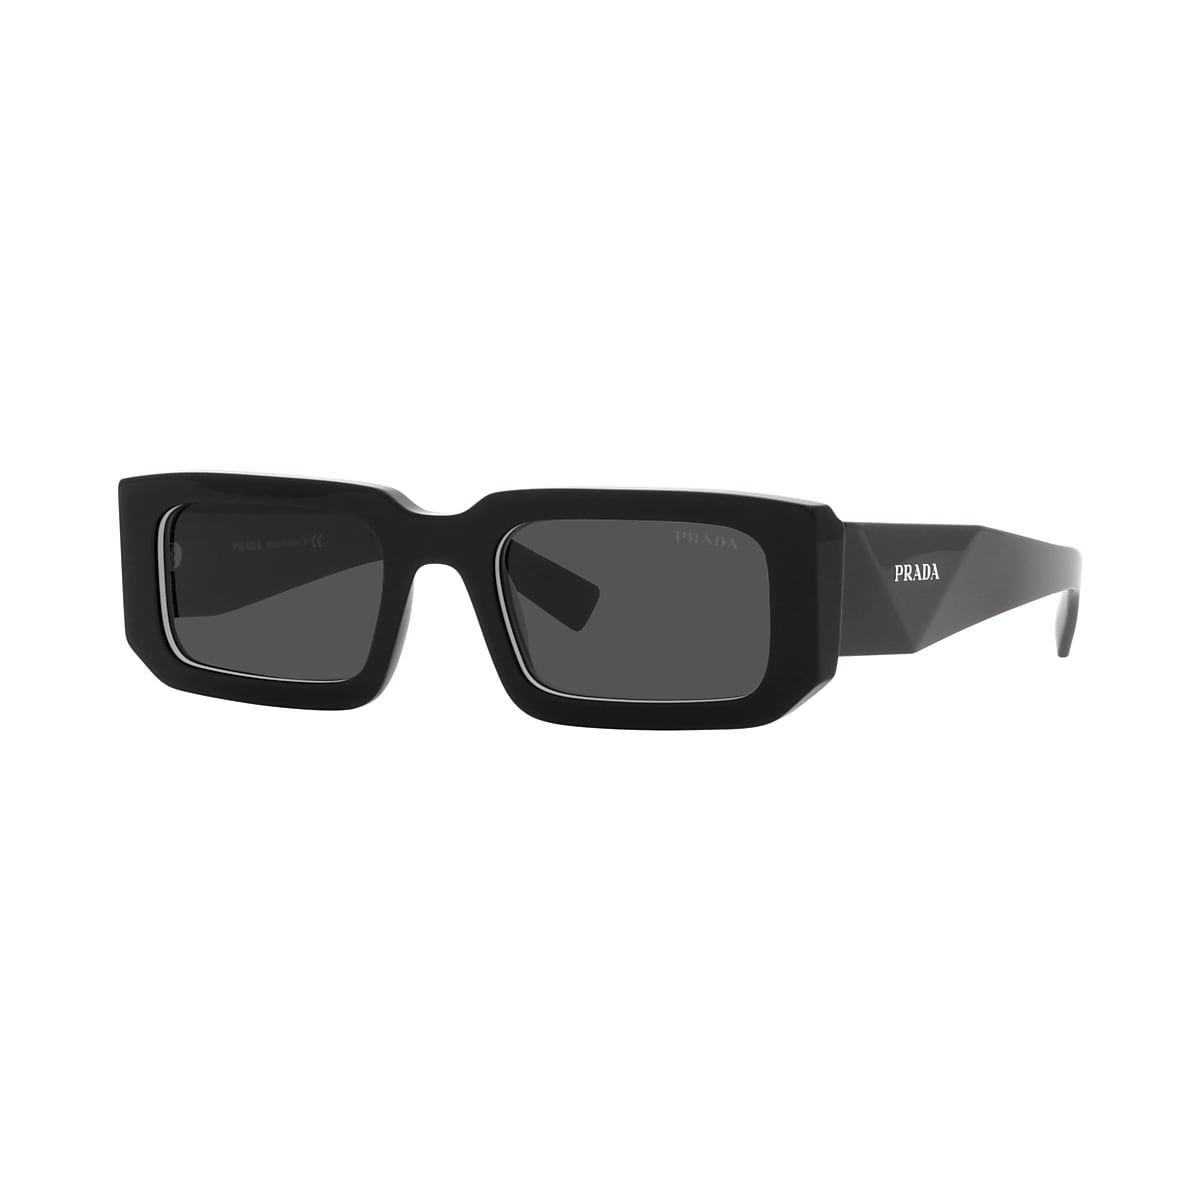 Prada PR 06YS 53 Dark Grey & Black/White Sunglasses | Sunglass Hut USA